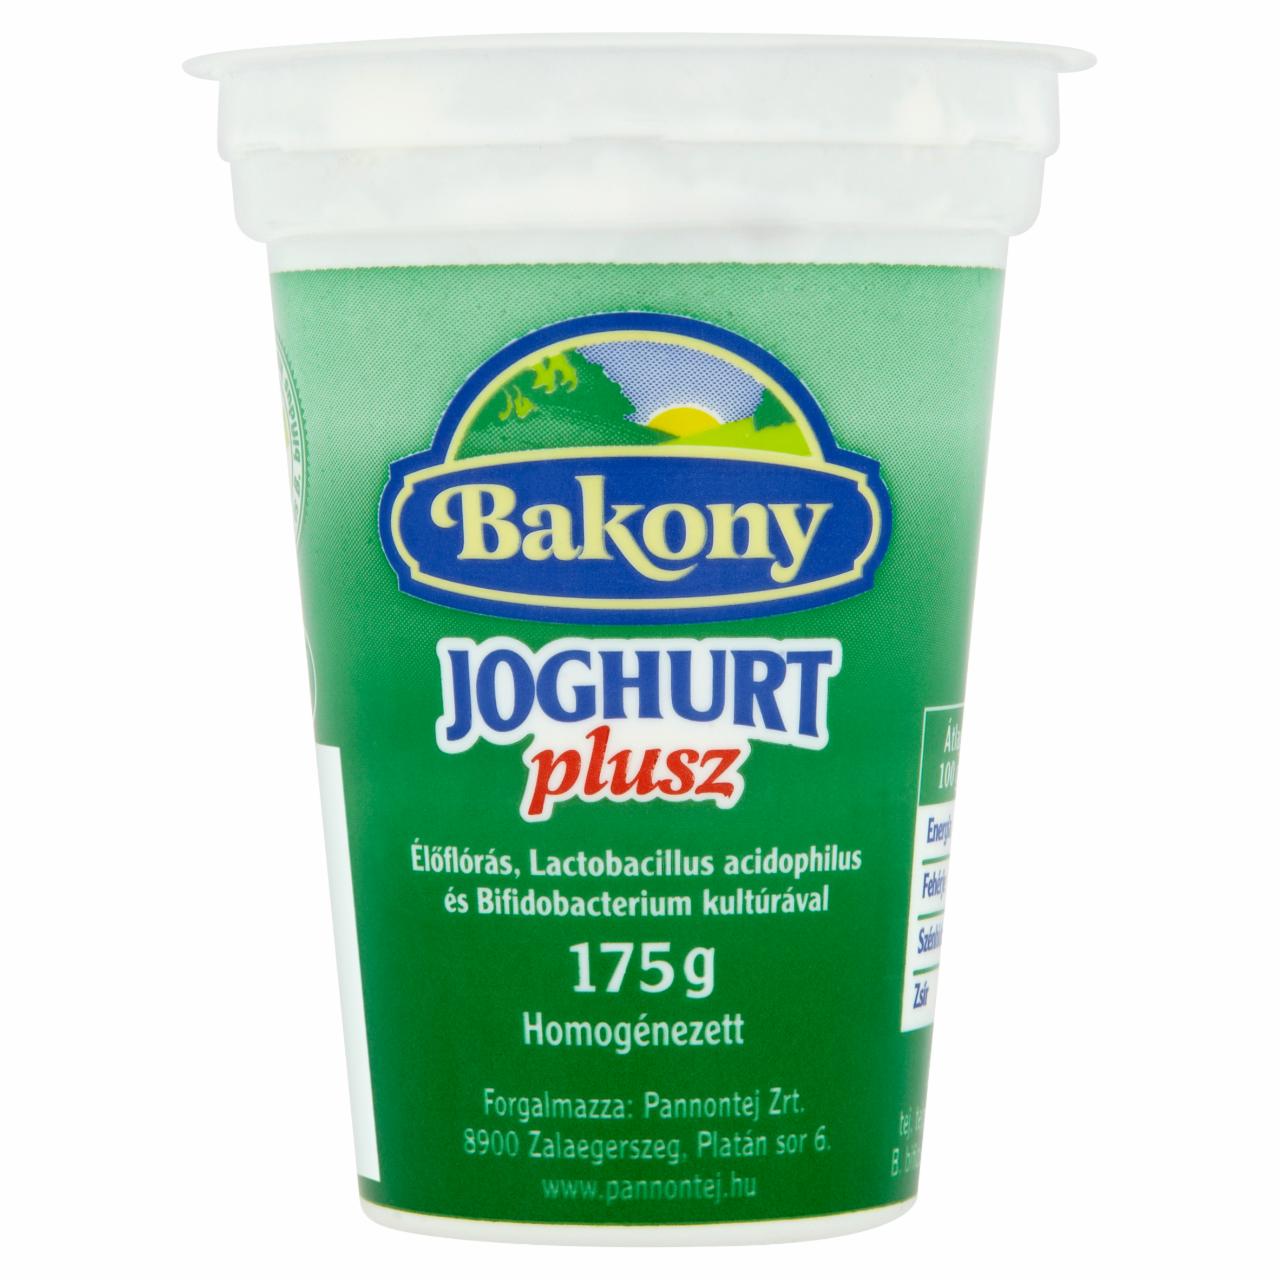 Képek - Bakony Plusz joghurt 175 g